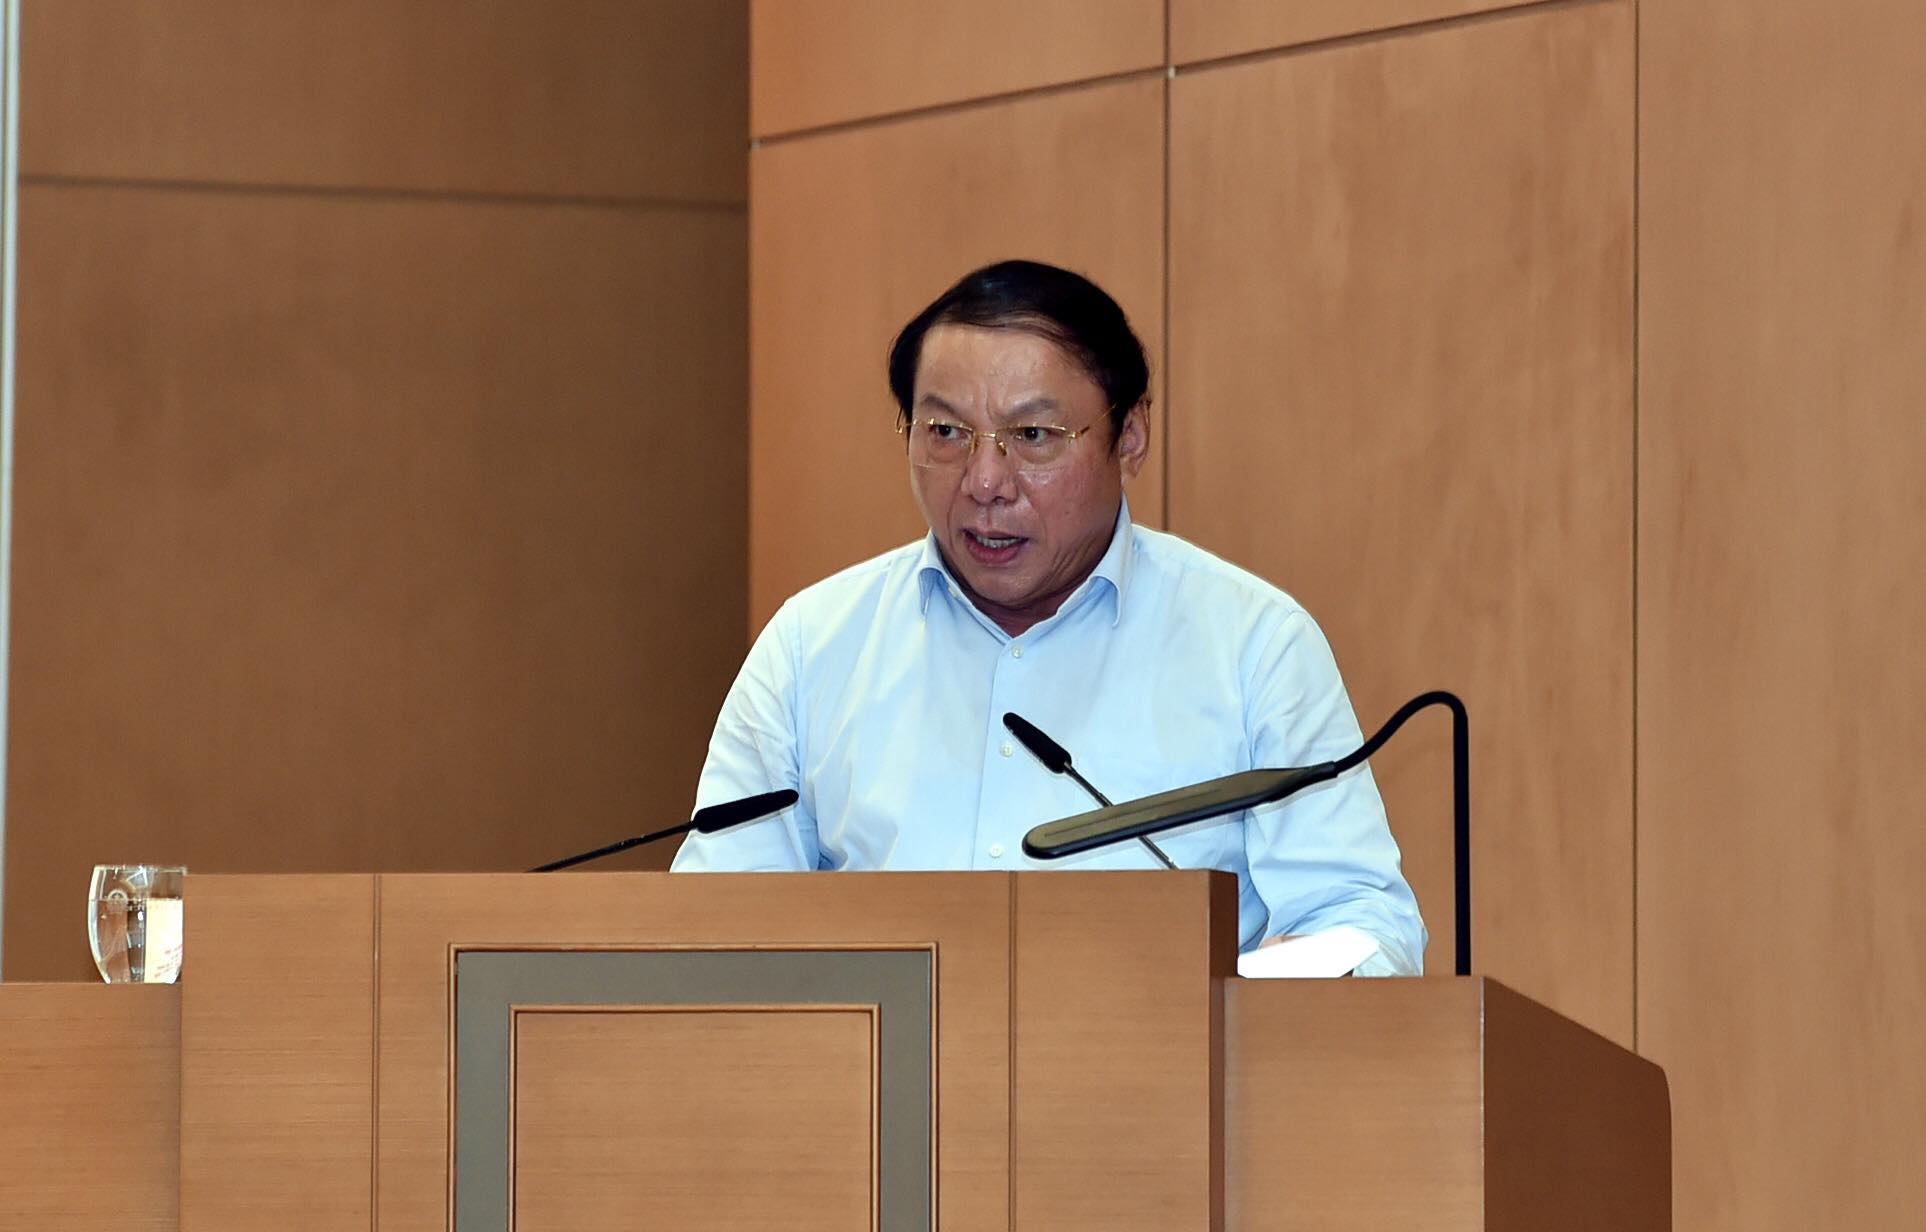 Bộ trưởng Bộ Văn hóa, Thể thao và Du lịch Nguyễn Văn Hùng